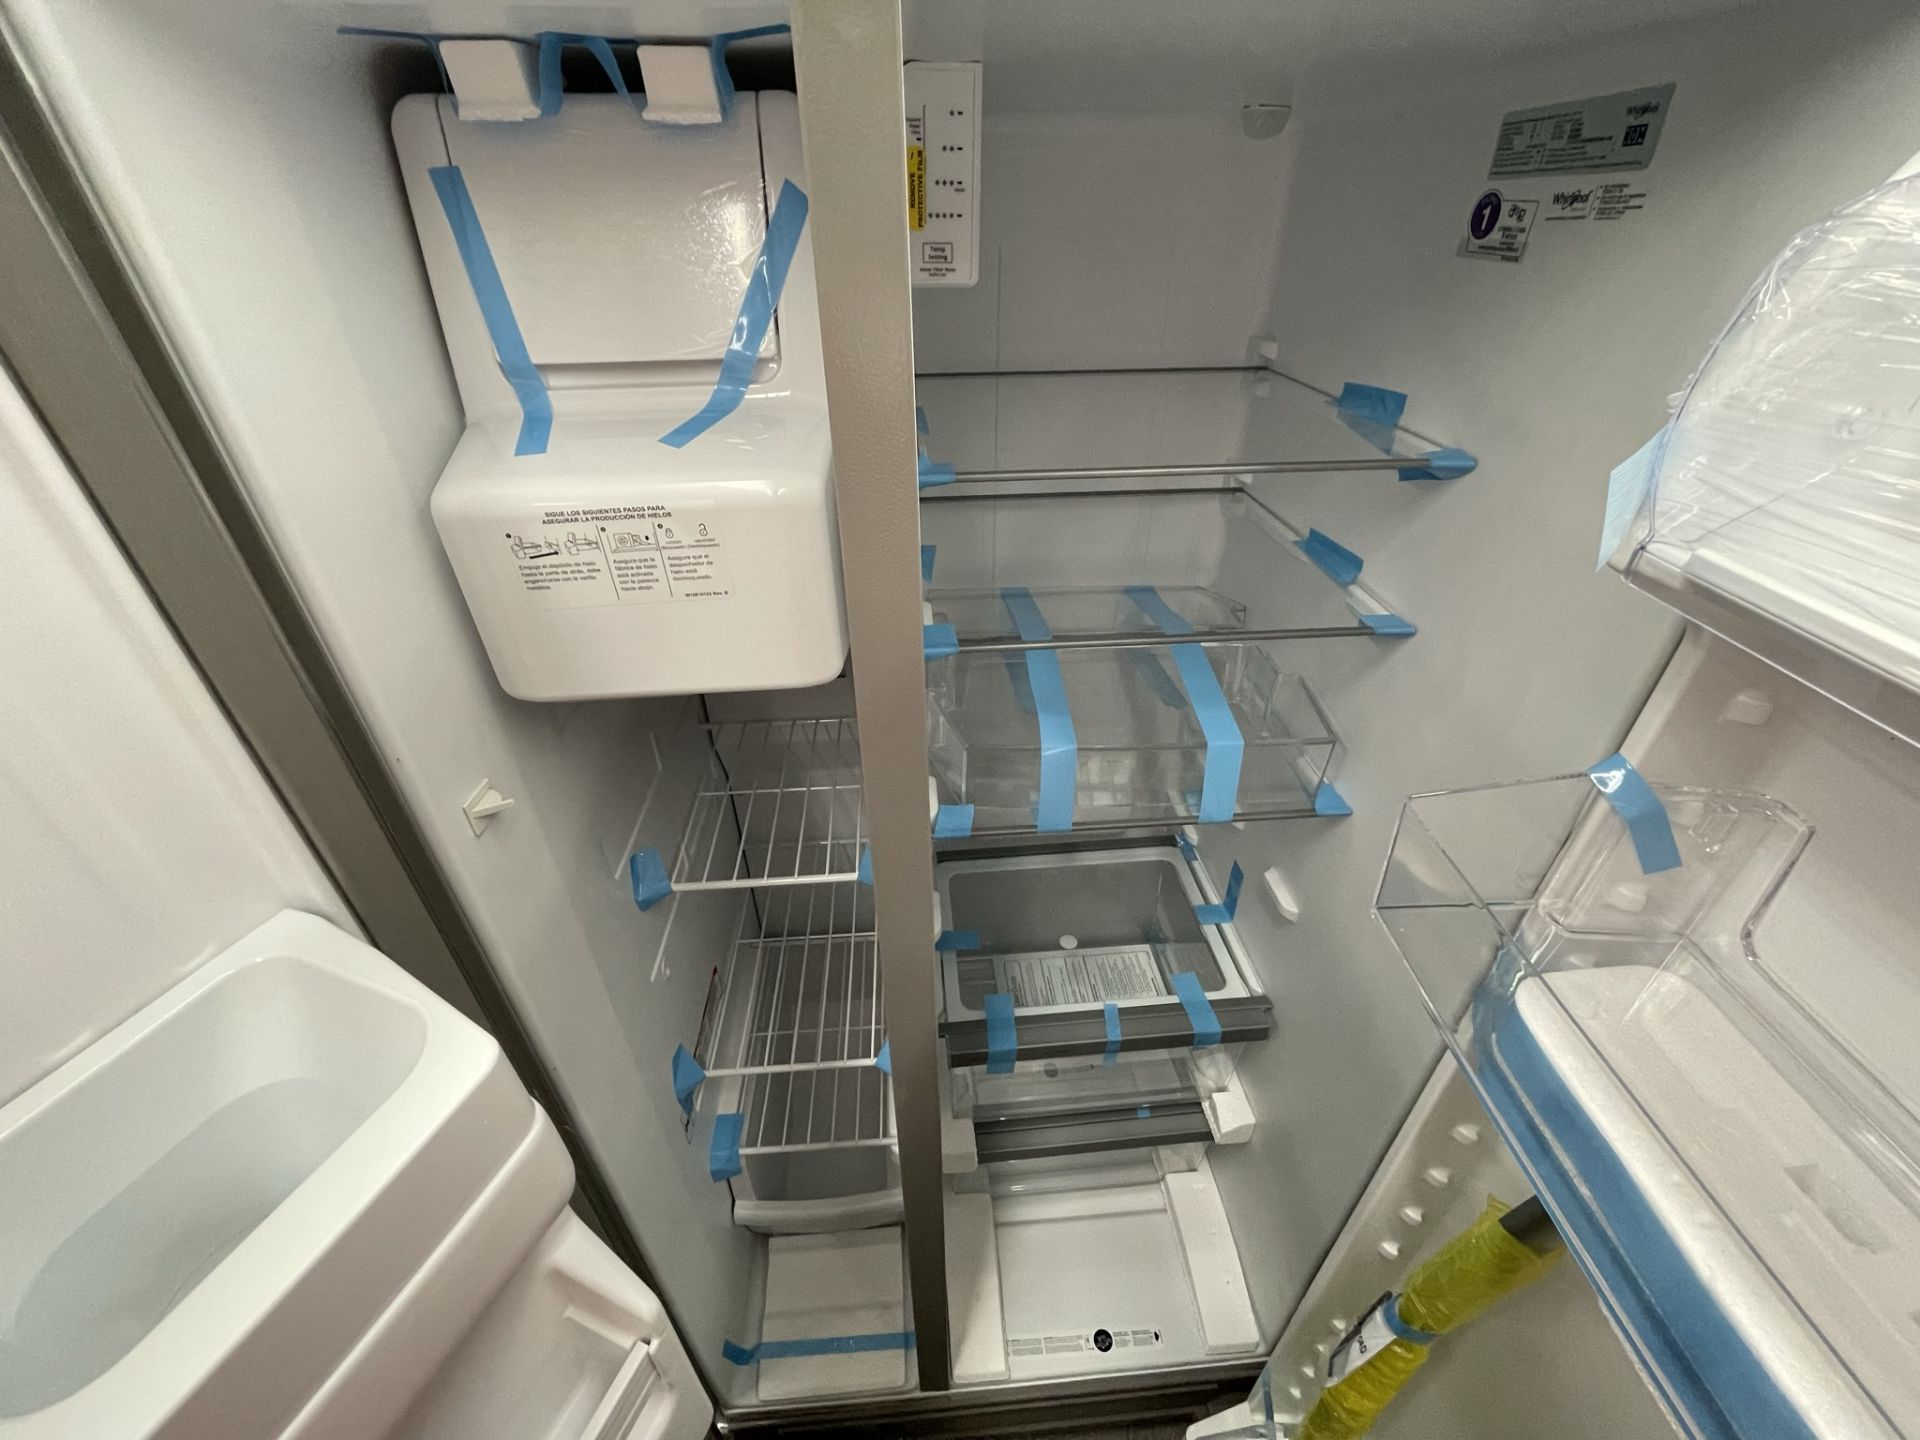 (EQUIPO NUEVO) 1 Refrigerador con dispensador de agua Marca WHIRLPOOL, Modelo WD2620S, Serie 363901 - Image 7 of 8